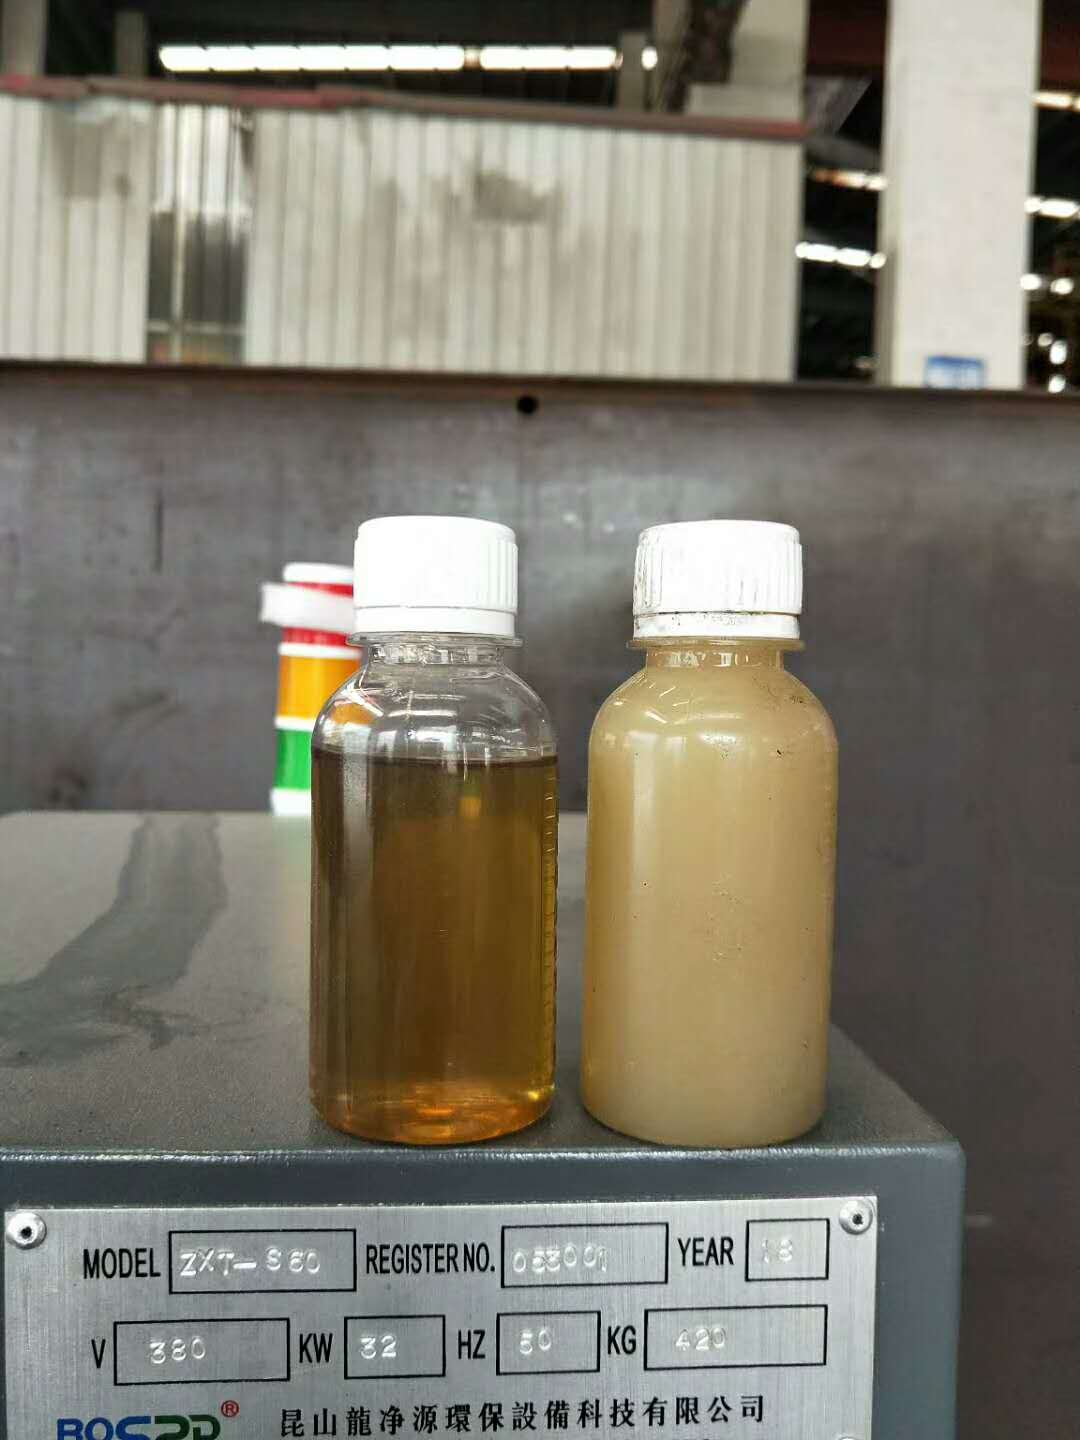 液压油滤油机